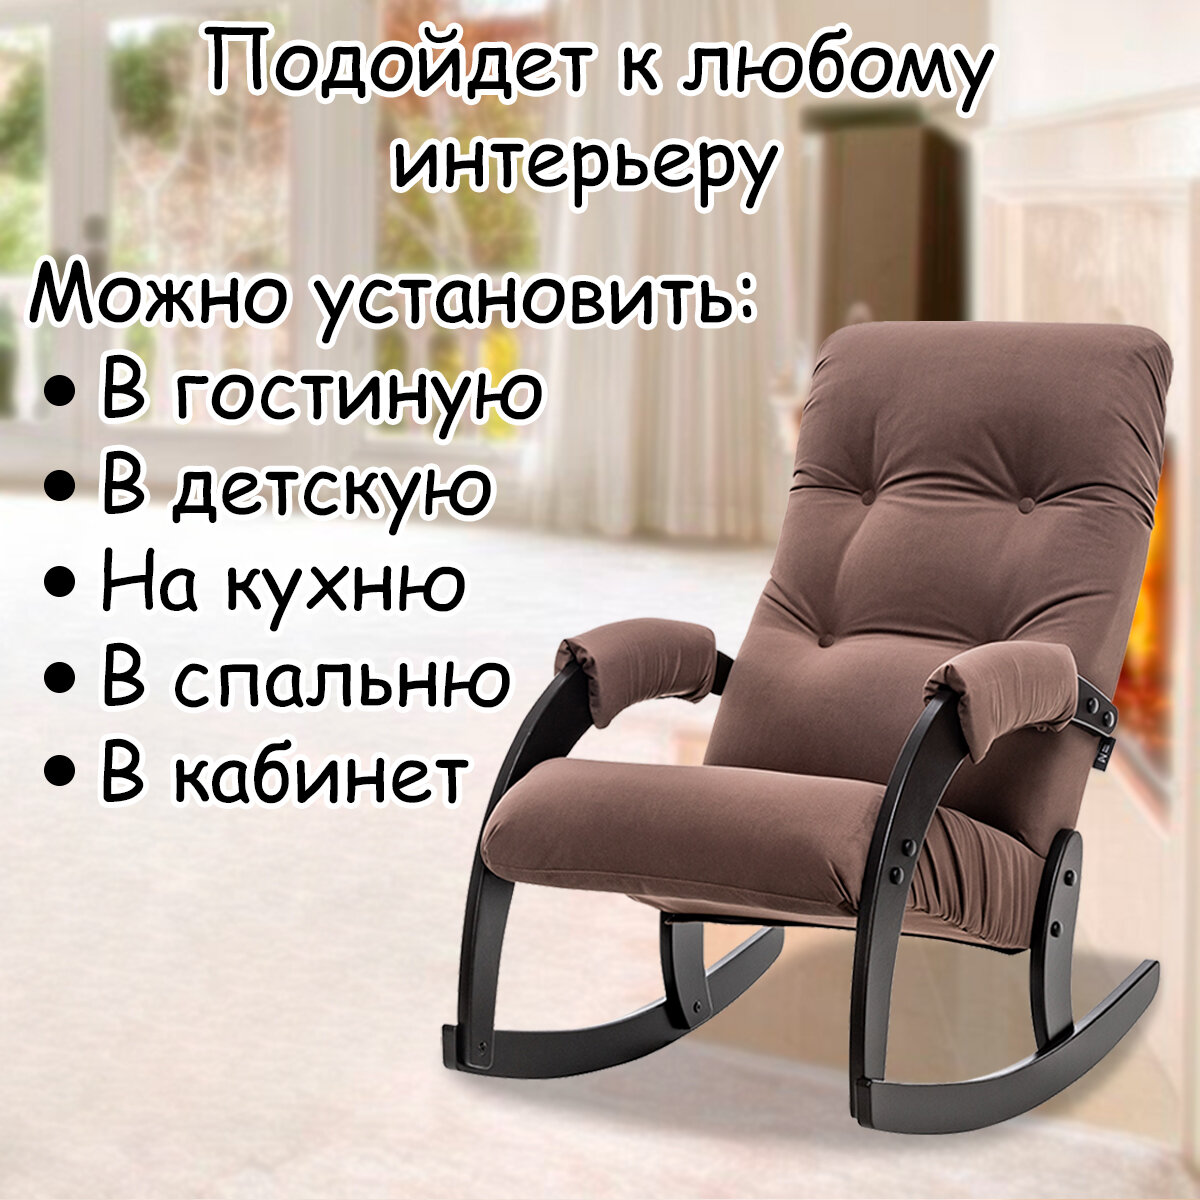 Кресло-качалка для взрослых 54х95х100 см, модель 67, maxx, цвет: Мaxx 235 (коричневый), каркас: Venge (черный) - фотография № 10